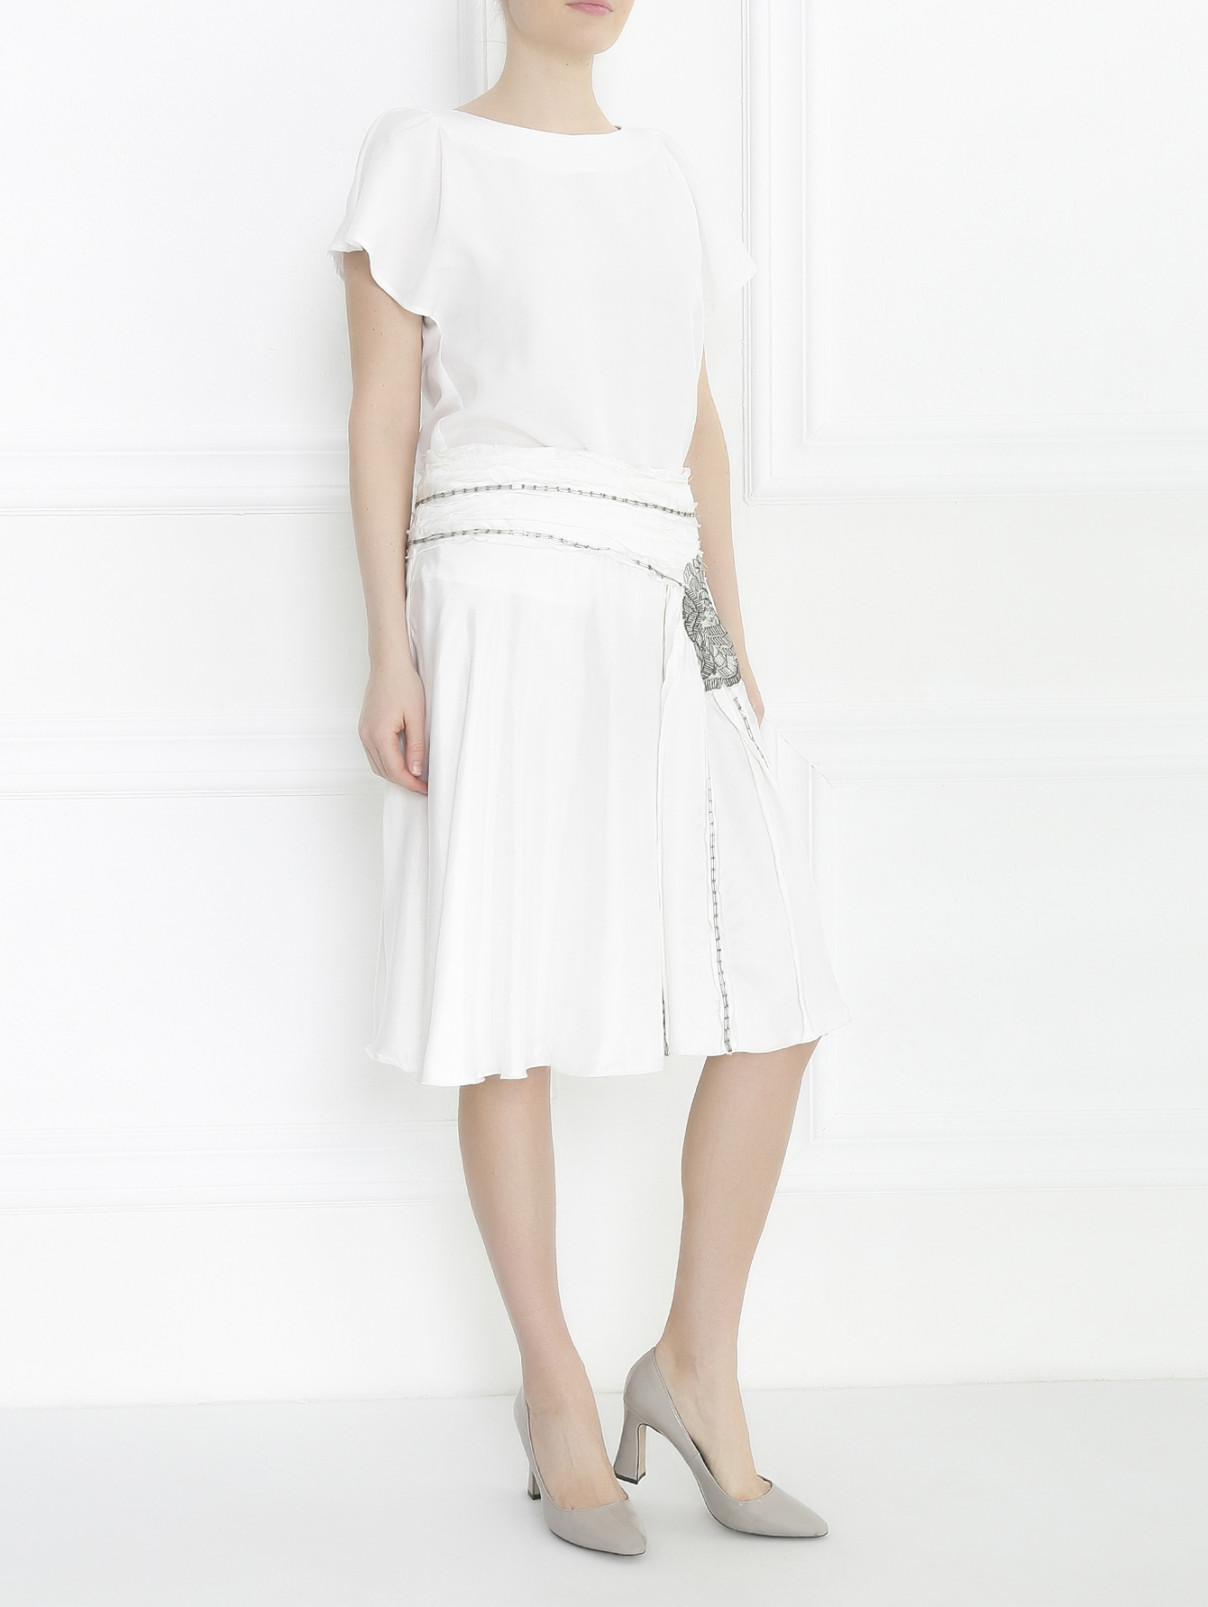 Юбка-миди с декоративной вышивкой из бисера Lili Petrus  –  Модель Общий вид  – Цвет:  Белый